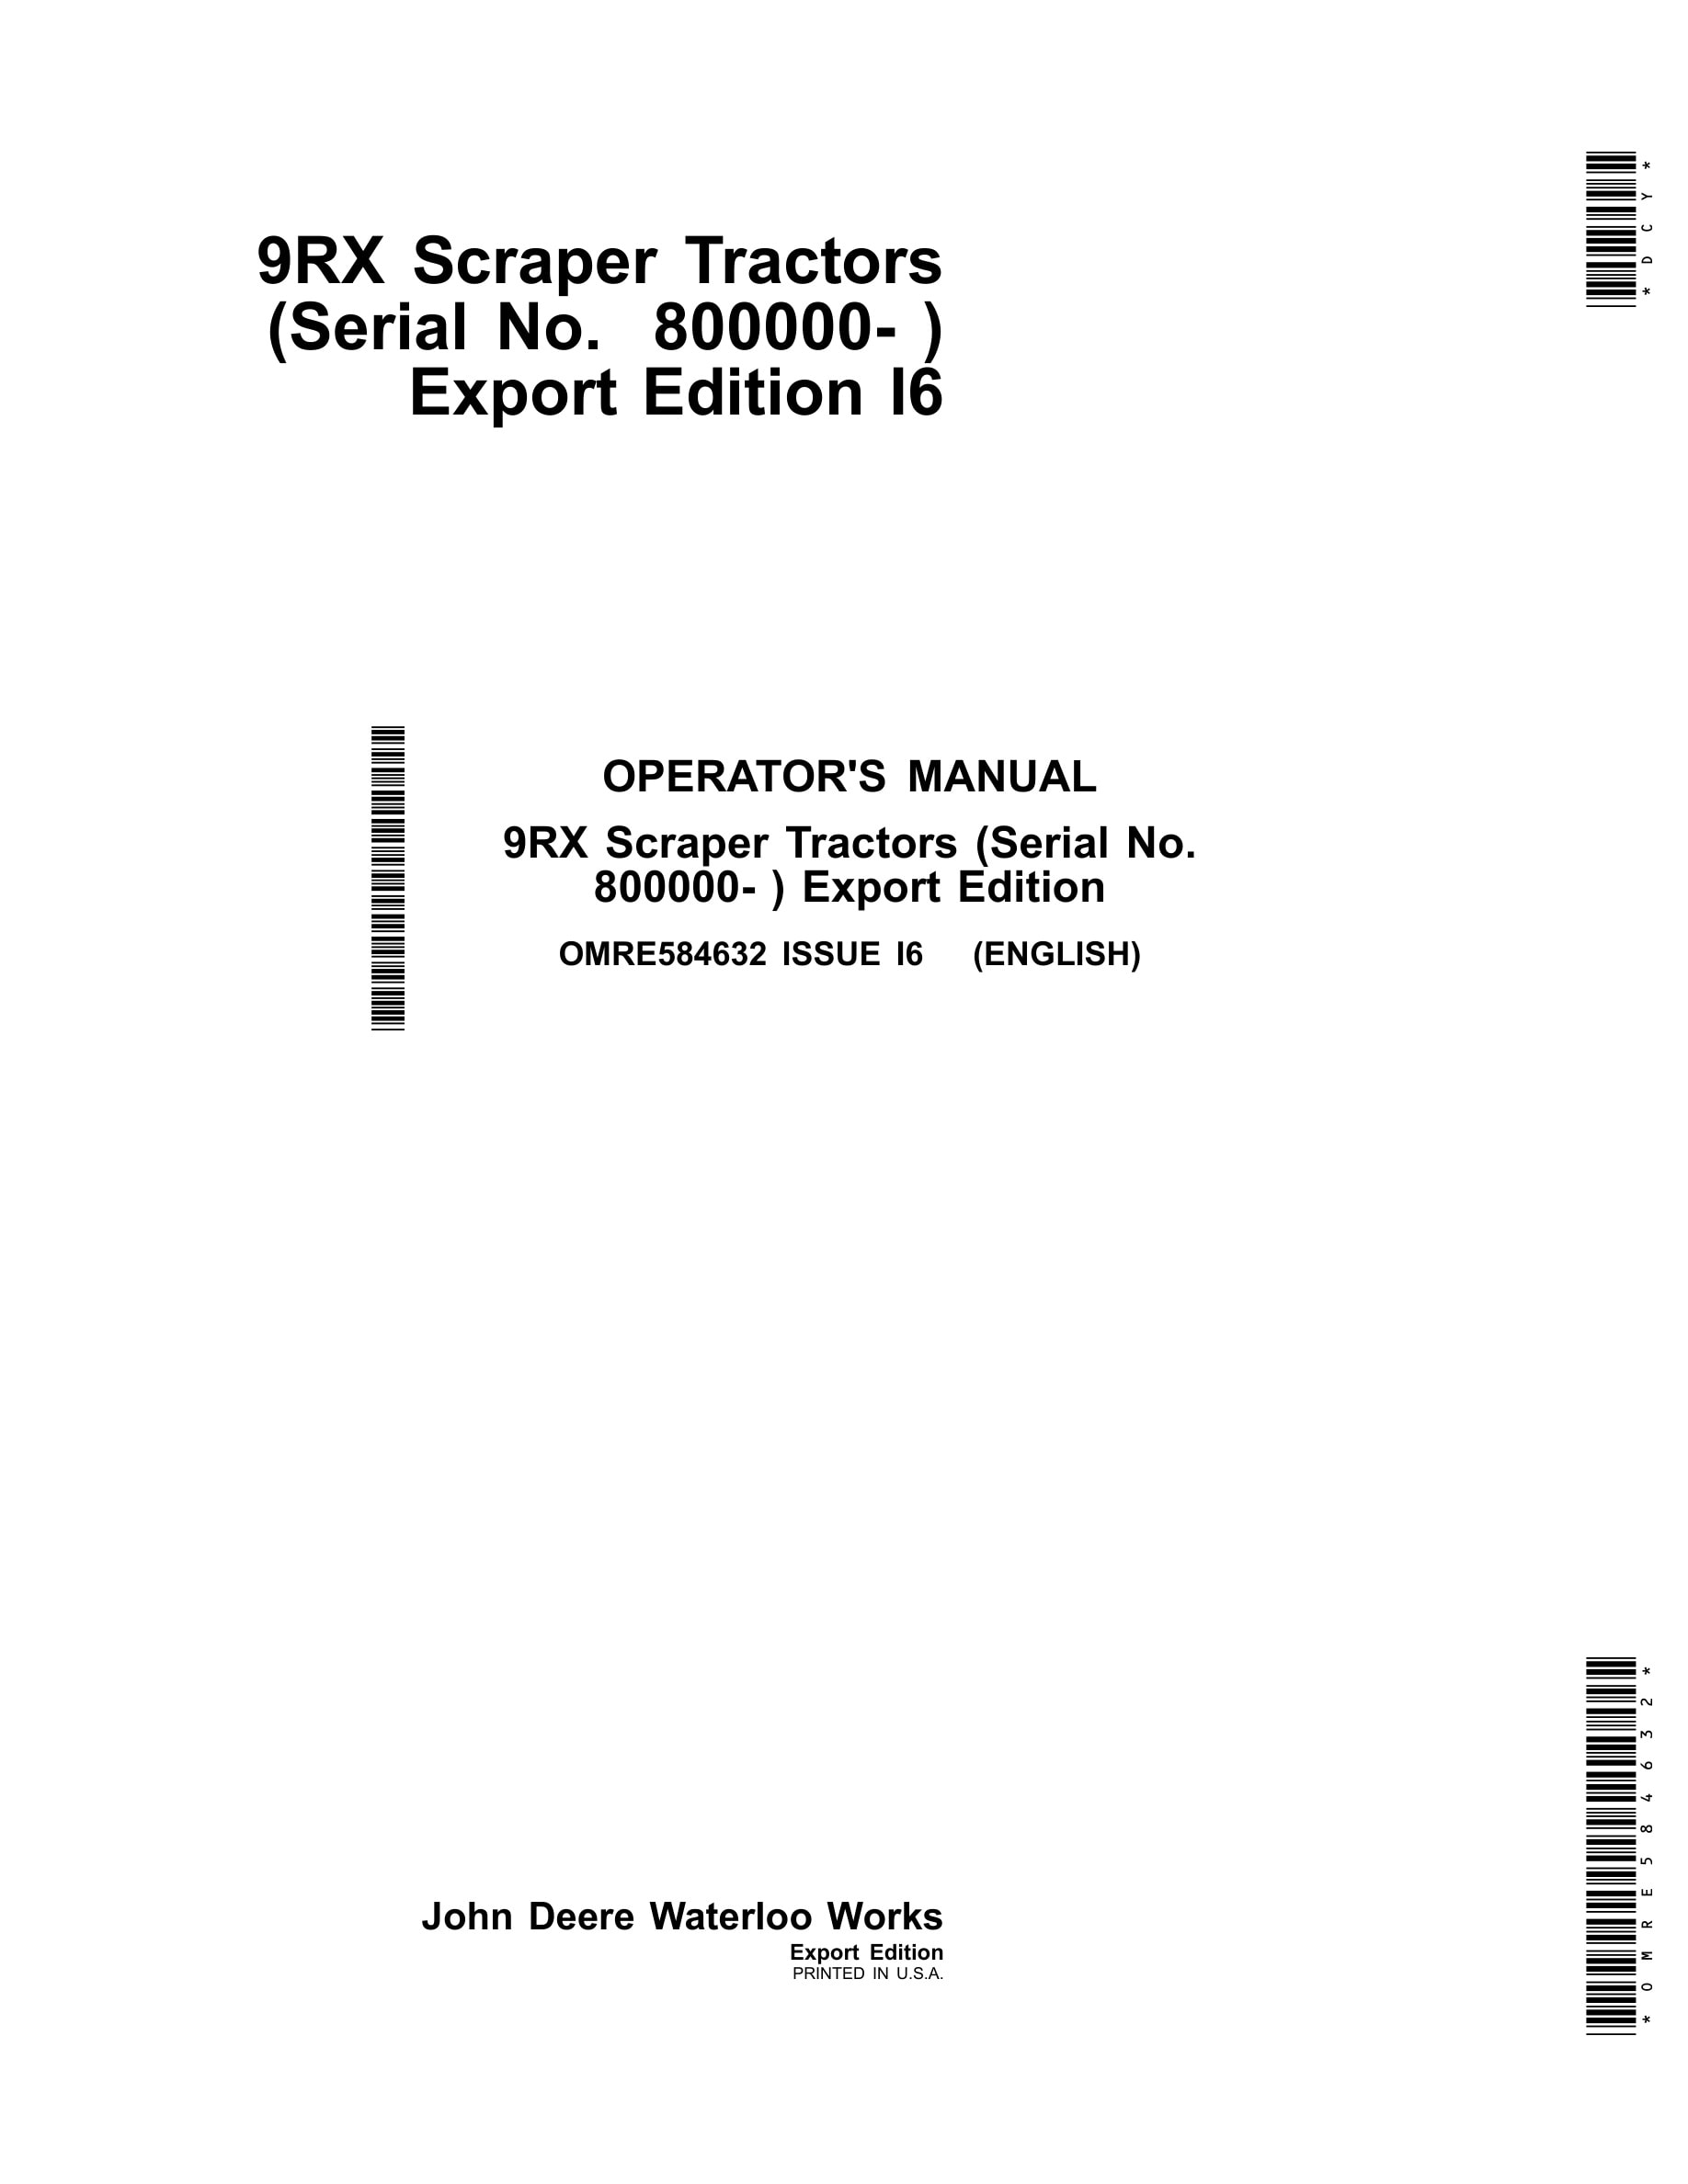 John Deere 9rx Scraper Tractors Operator Manuals OMRE584632-1